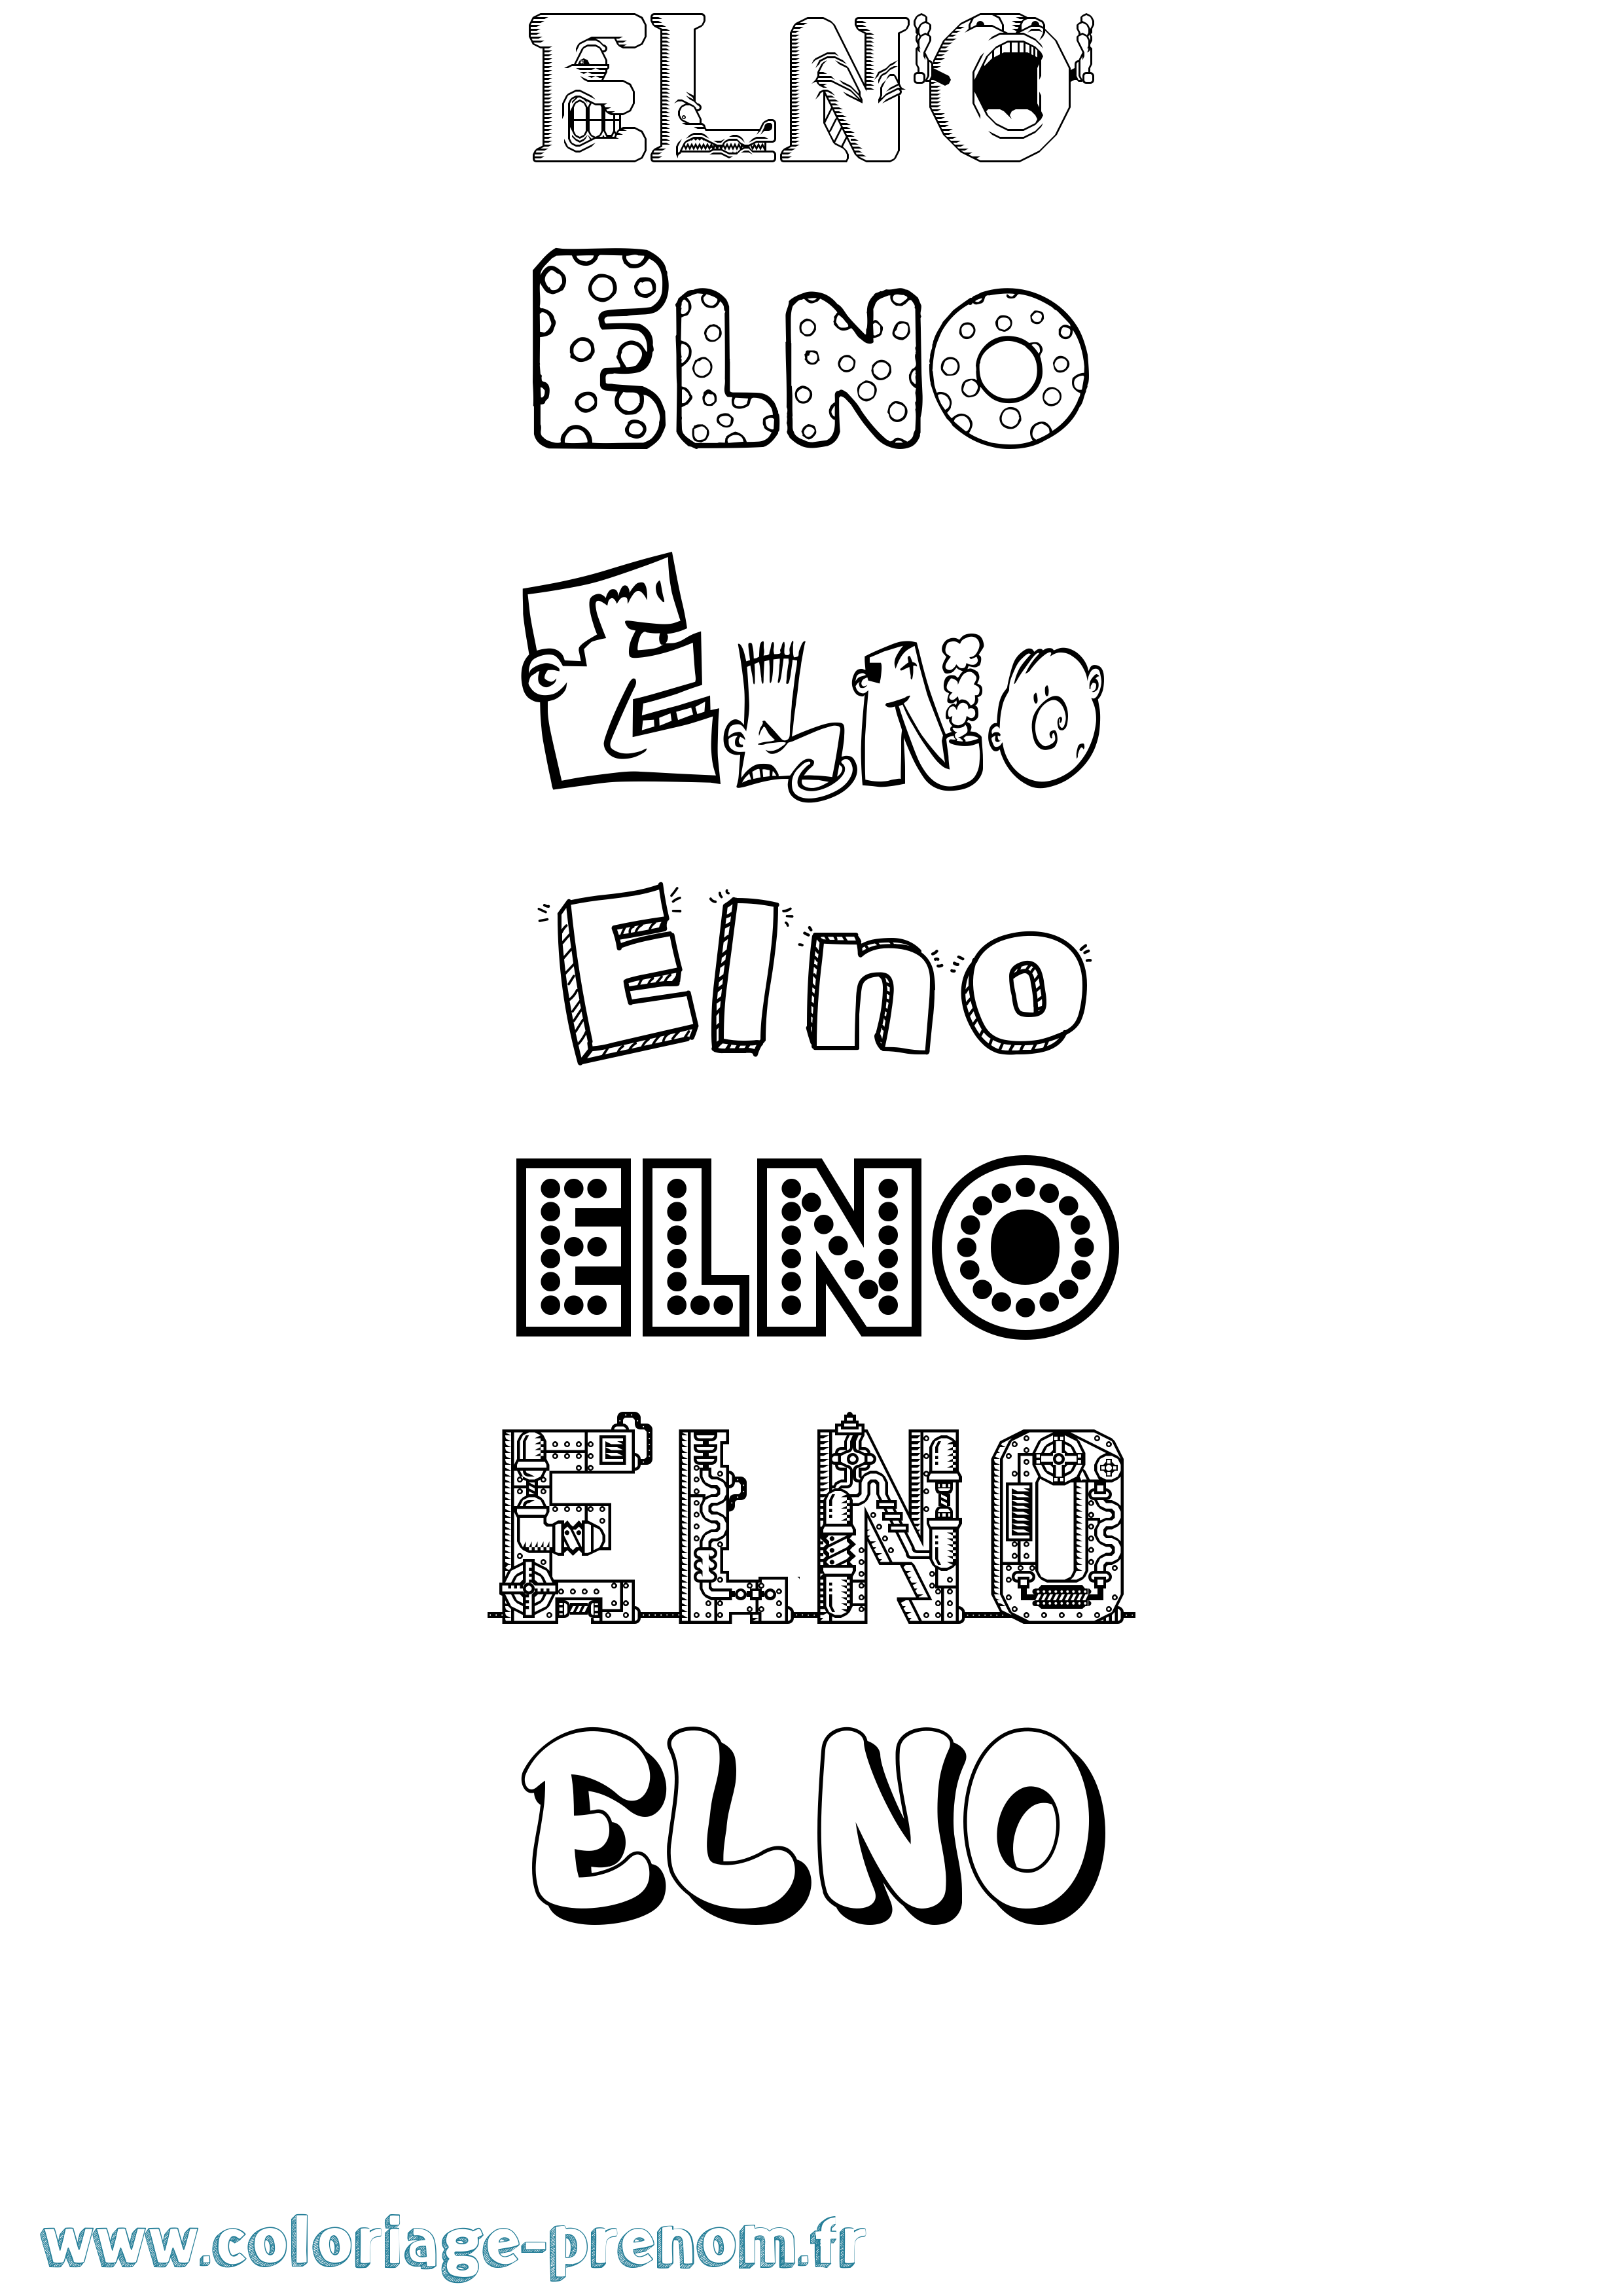 Coloriage prénom Elno Fun